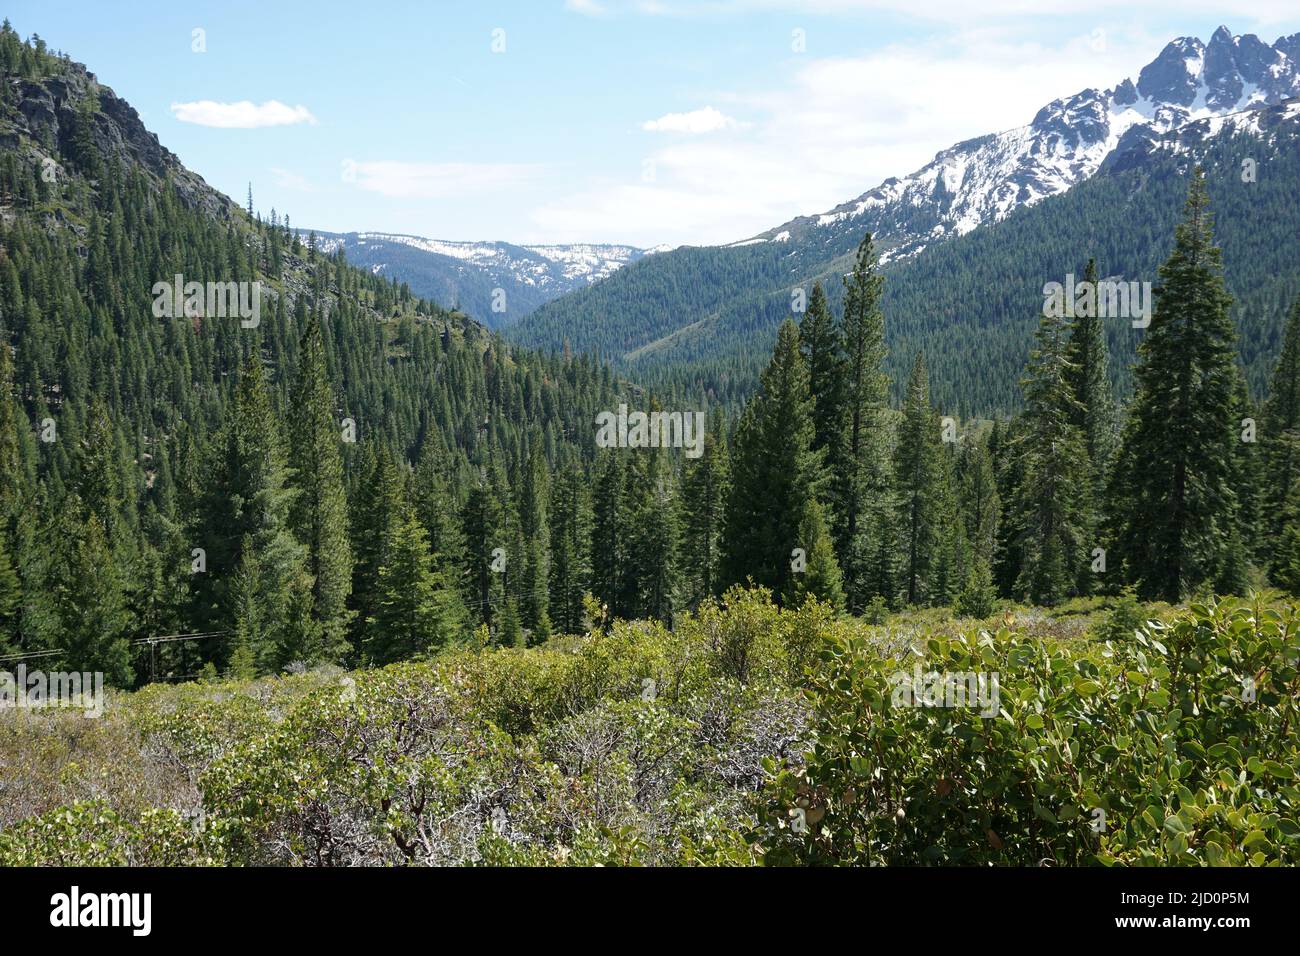 The Sierra Nevada Mountains, California Stock Photo